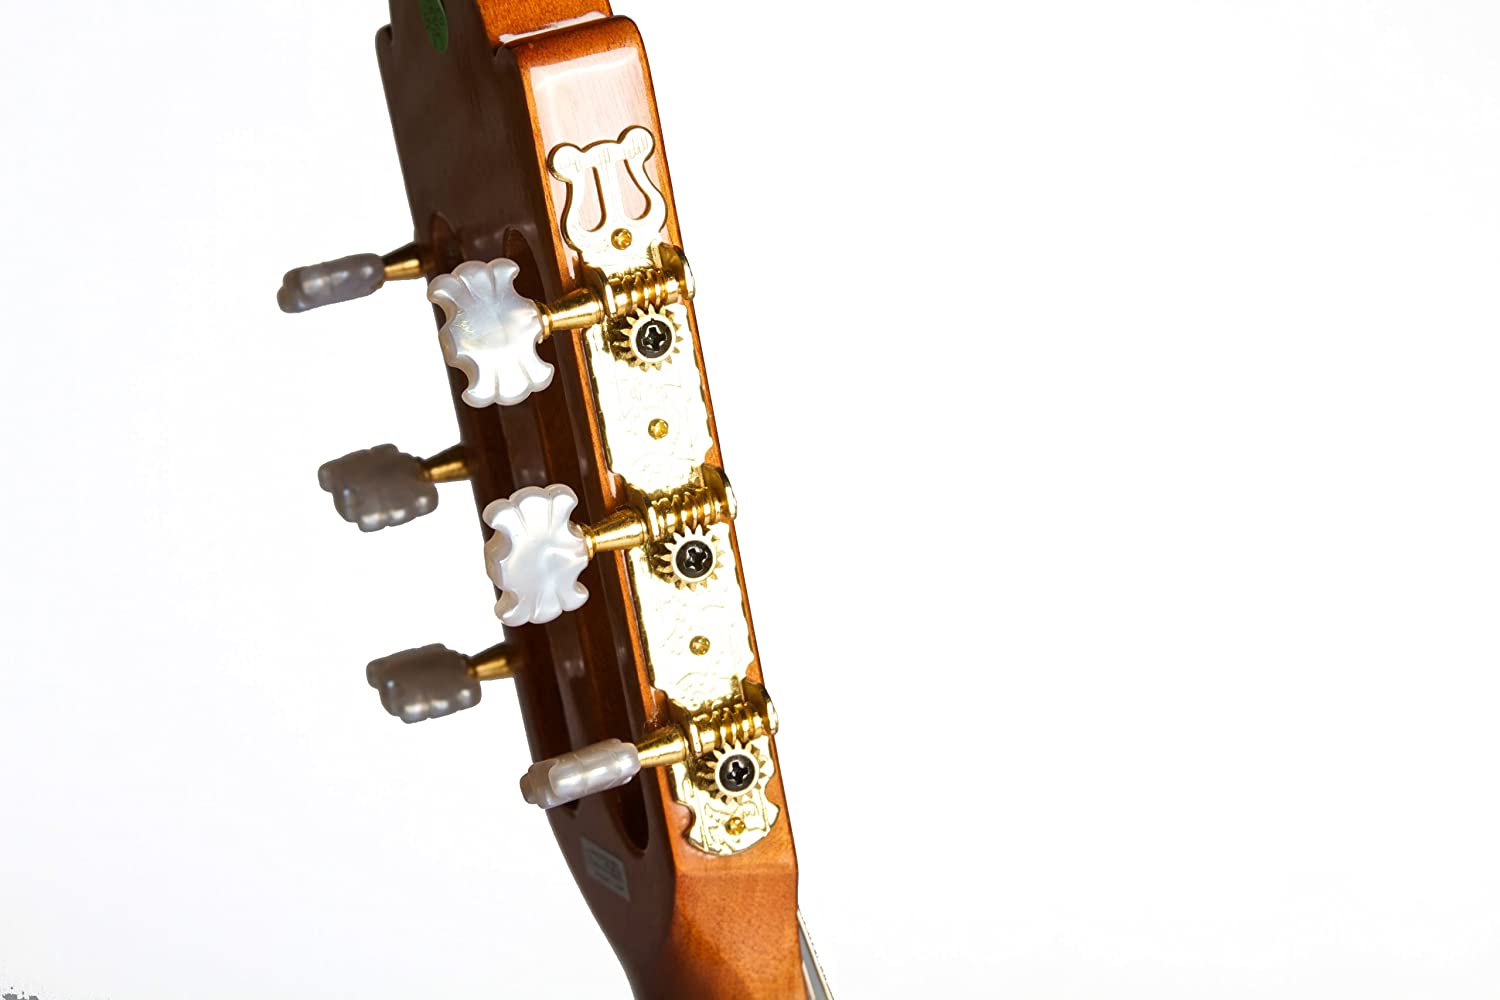 Suzuki SCG-36CE Classical Guitar